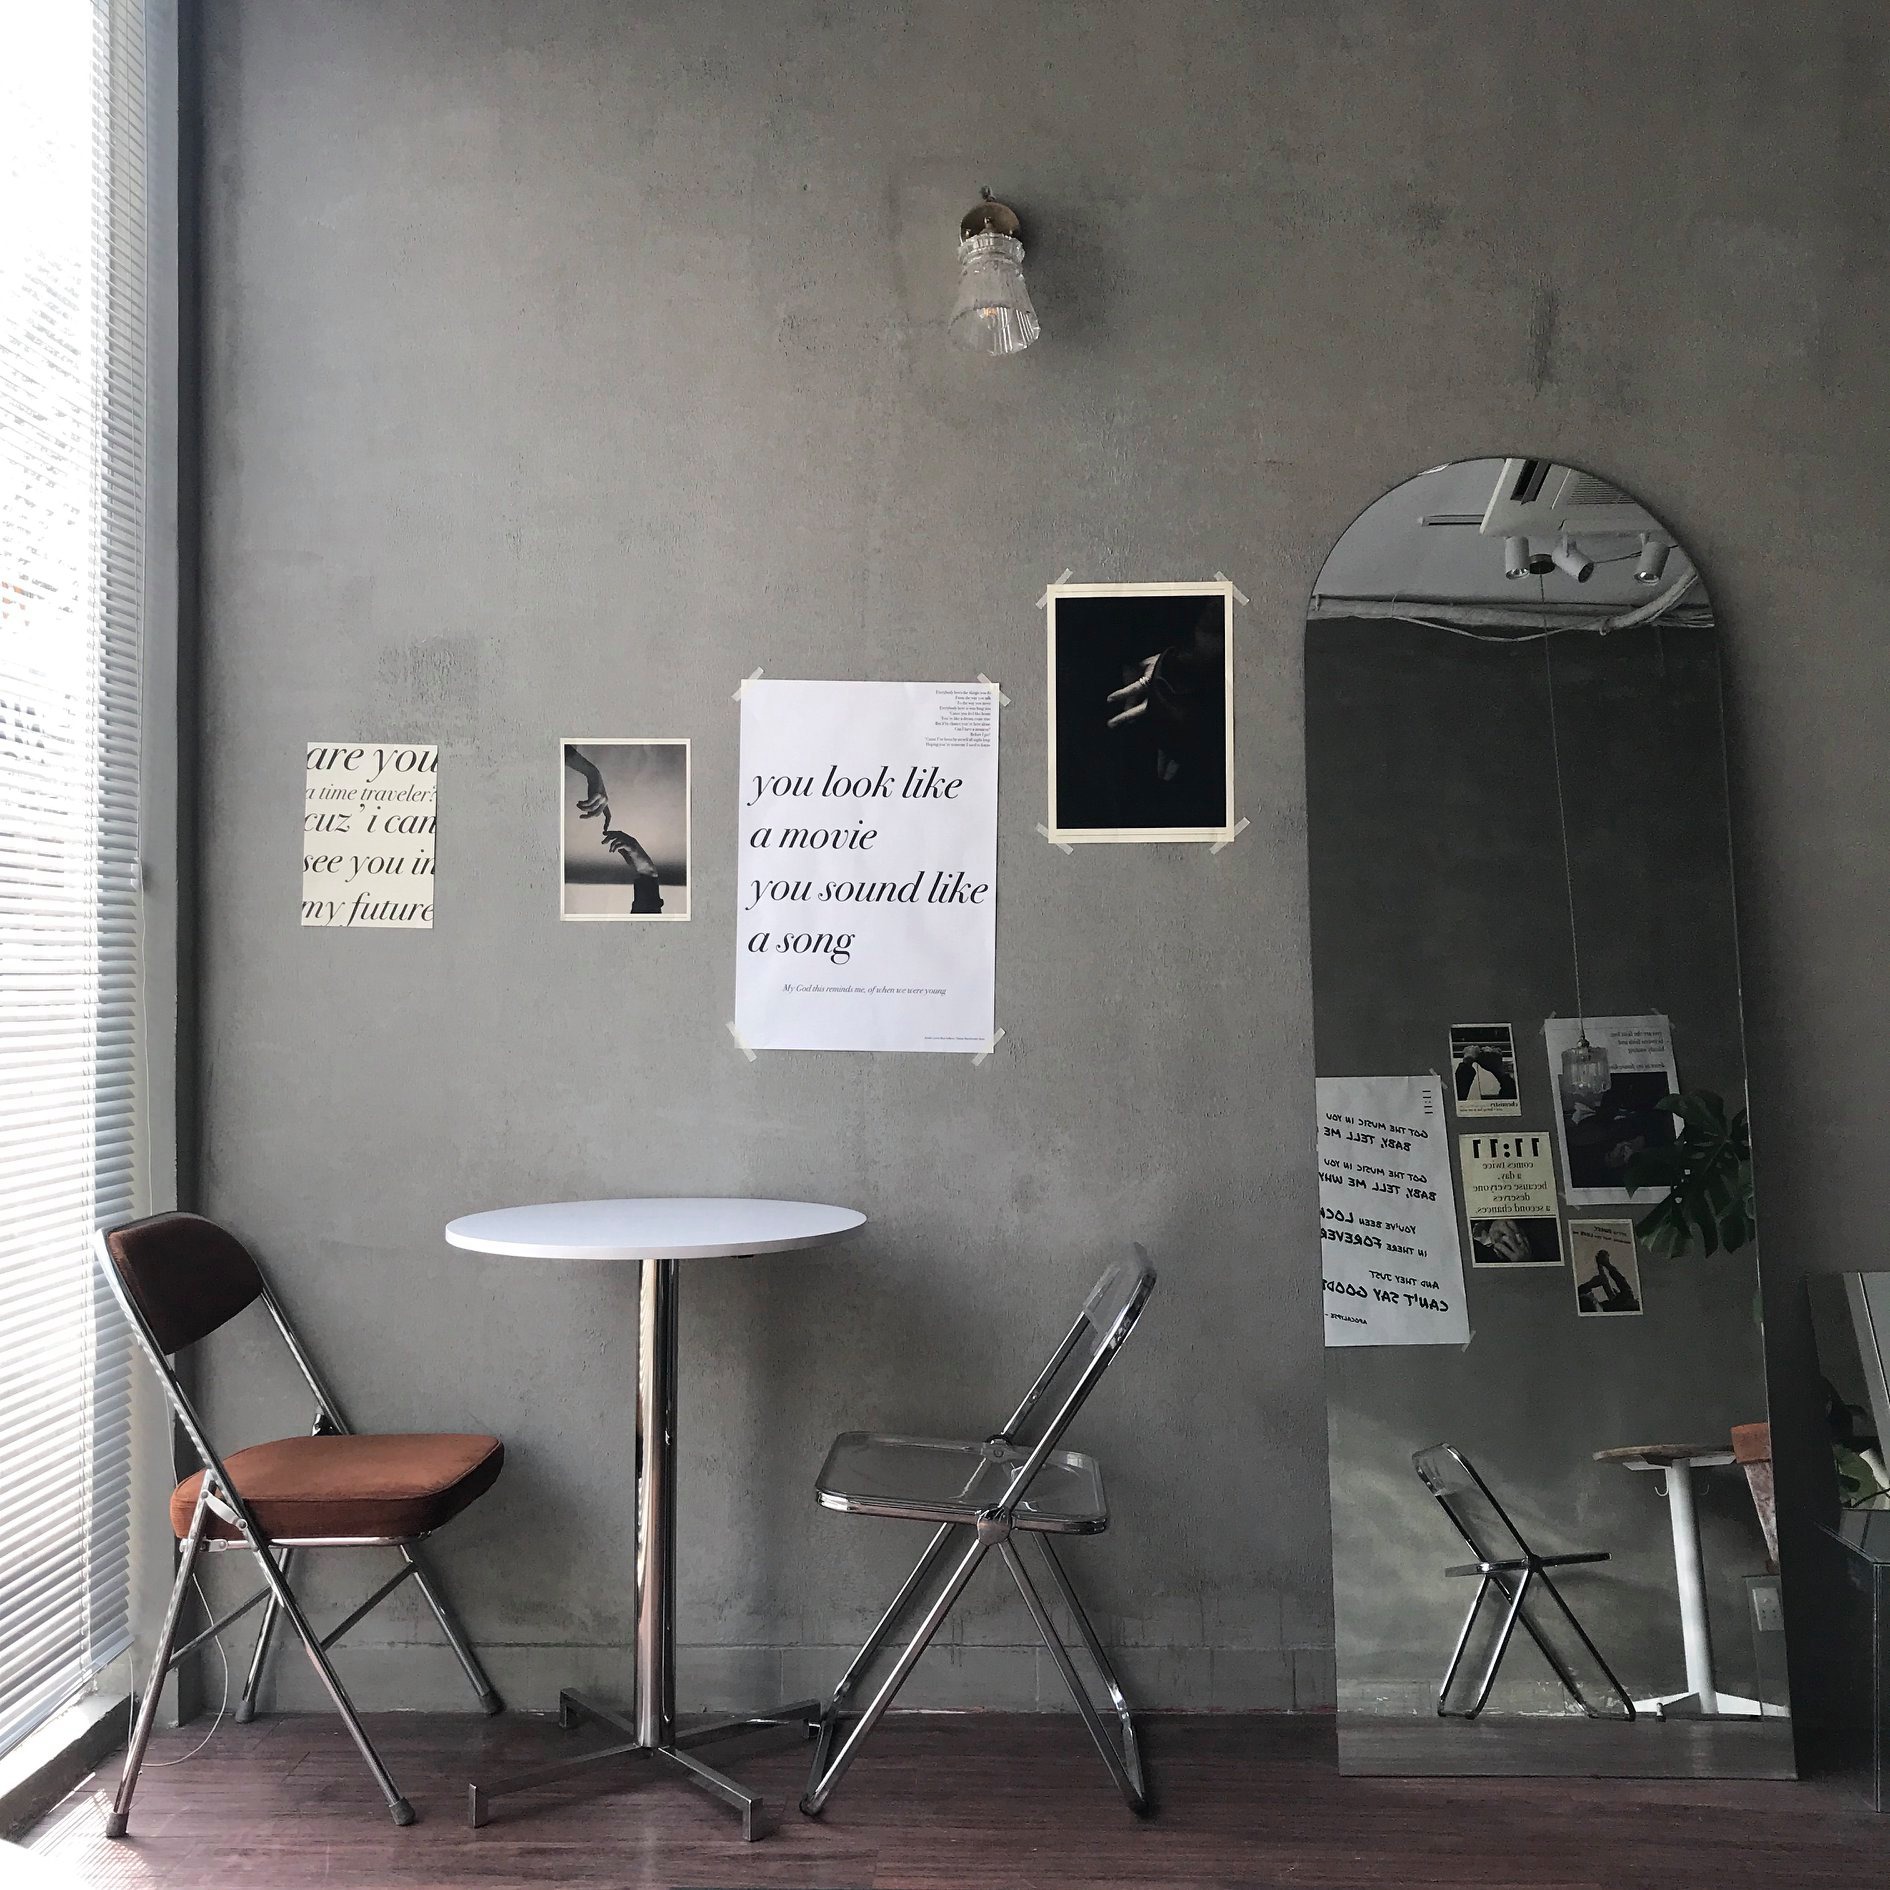 không gian tinh tế của 11:11 cafe